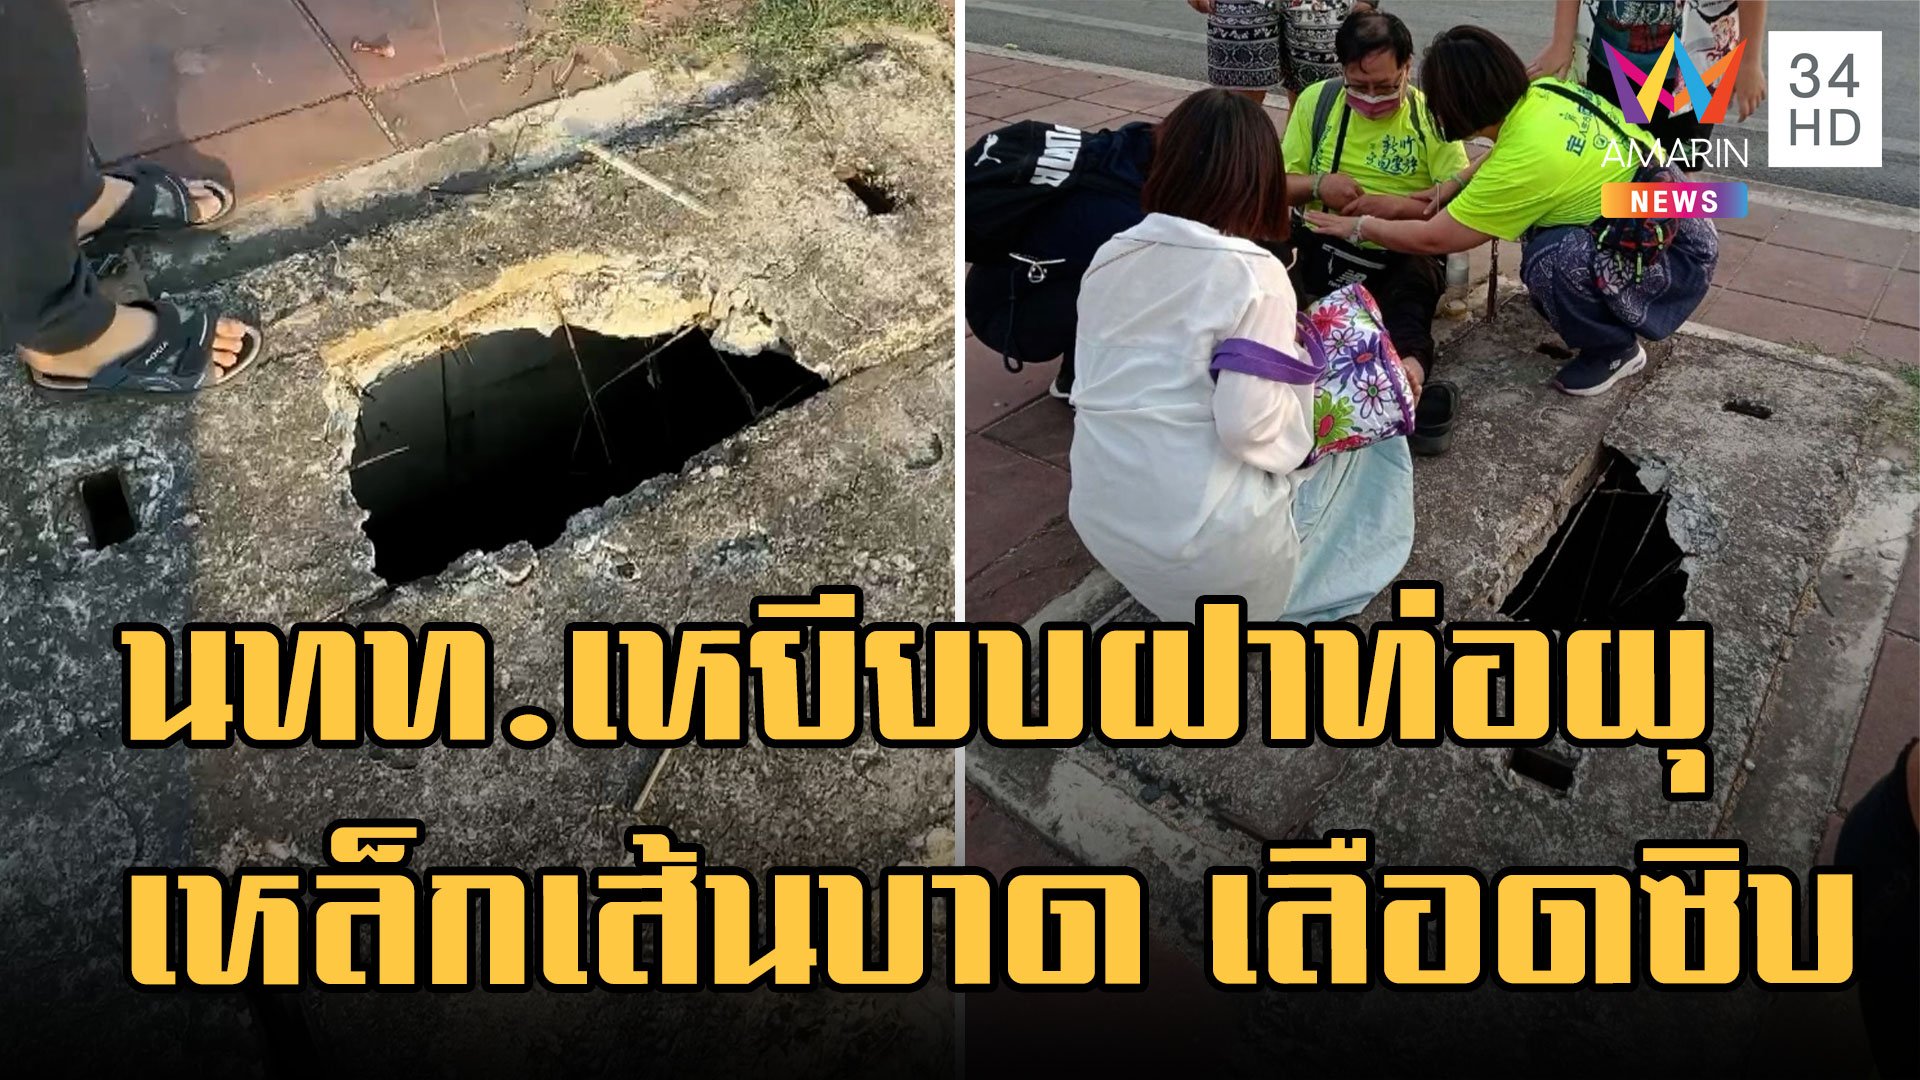 อเมซิ่งไทยแลนด์ นทท.จีนเหยียบฝ่าท่อผุ เหล็กเส้นบาด | ข่าวอรุณอมรินทร์ | 27 ม.ค. 66 | AMARIN TVHD34